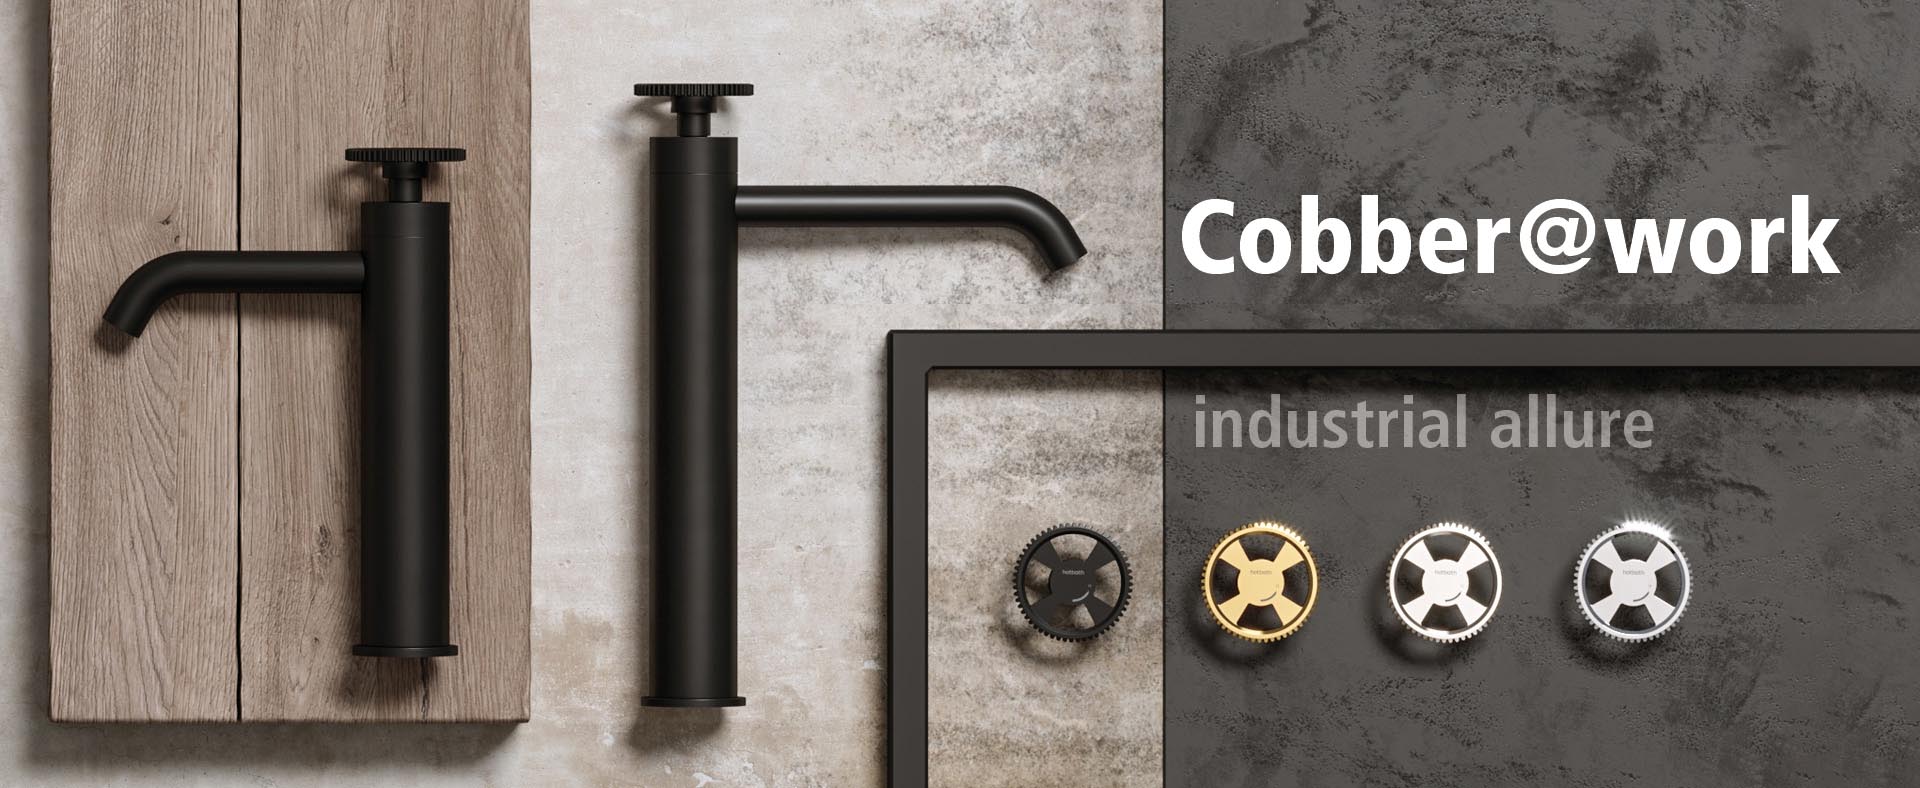 Cobber@work_new